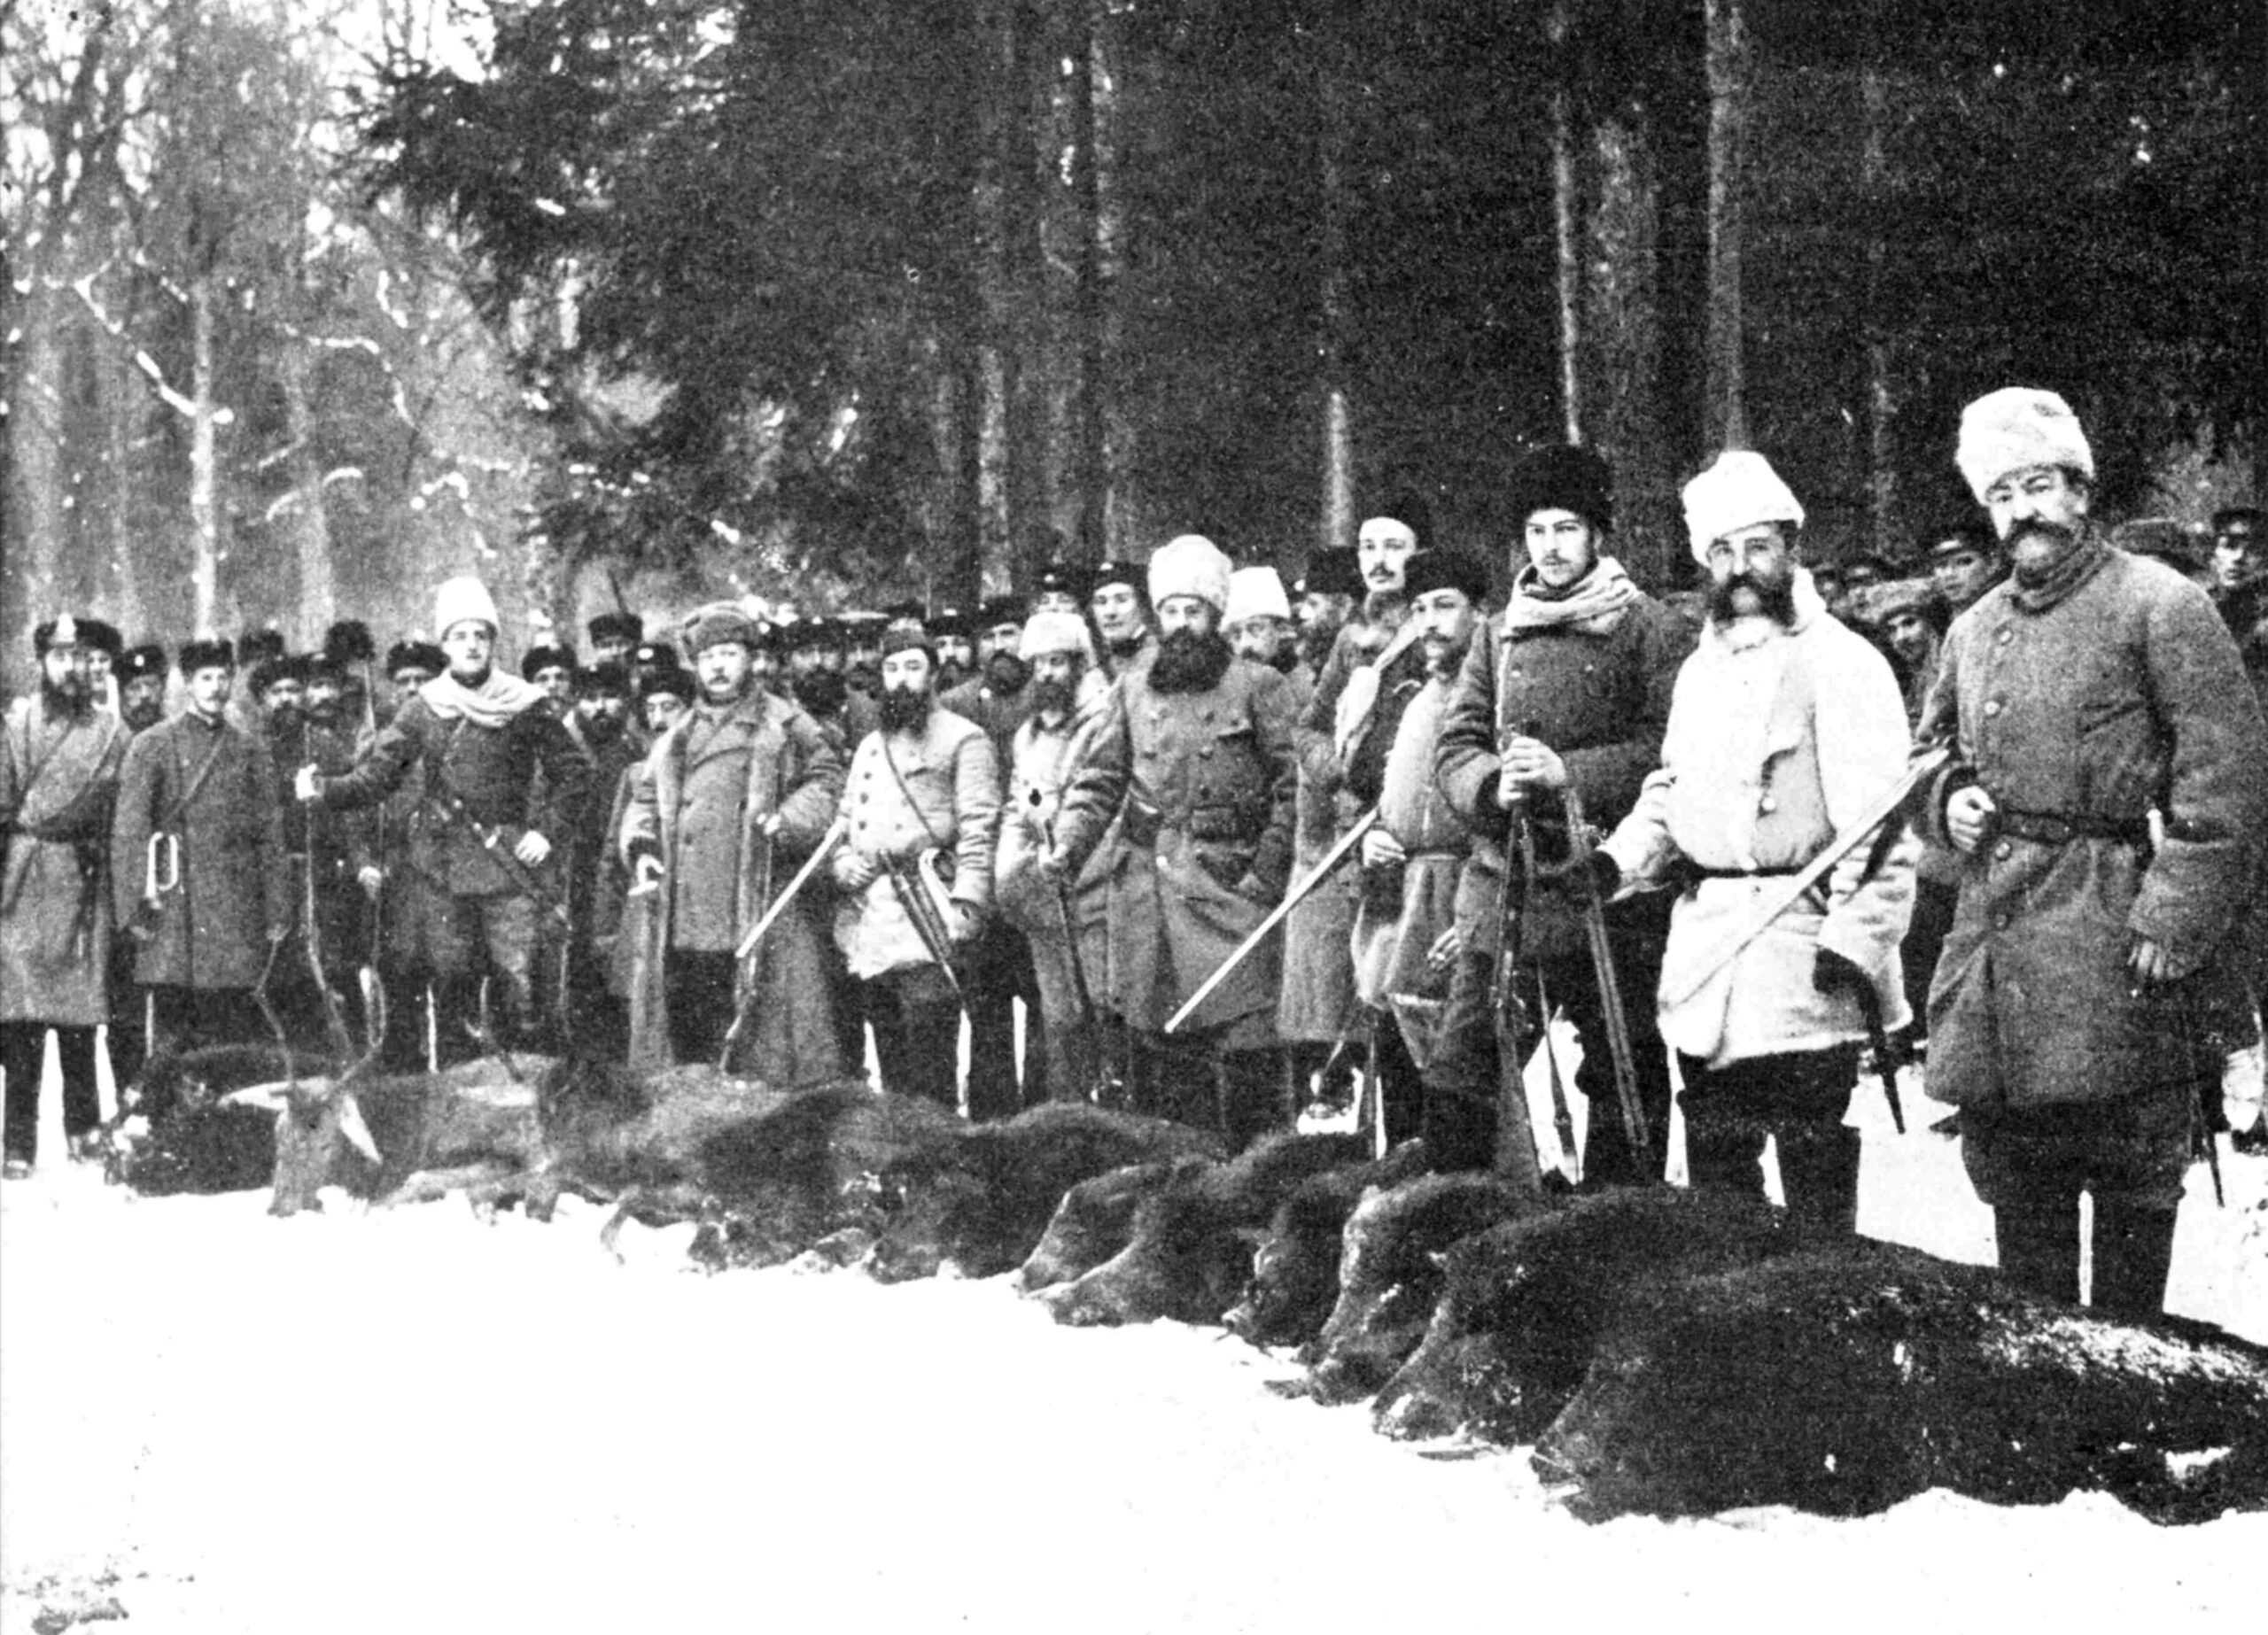 Jedna z pierwszych fotografii wykonanych w Puszczy Białowieskiej. Przedstawia uczestników polowania w grudniu 1885 r., stojących przy upolowanej zwierzynie